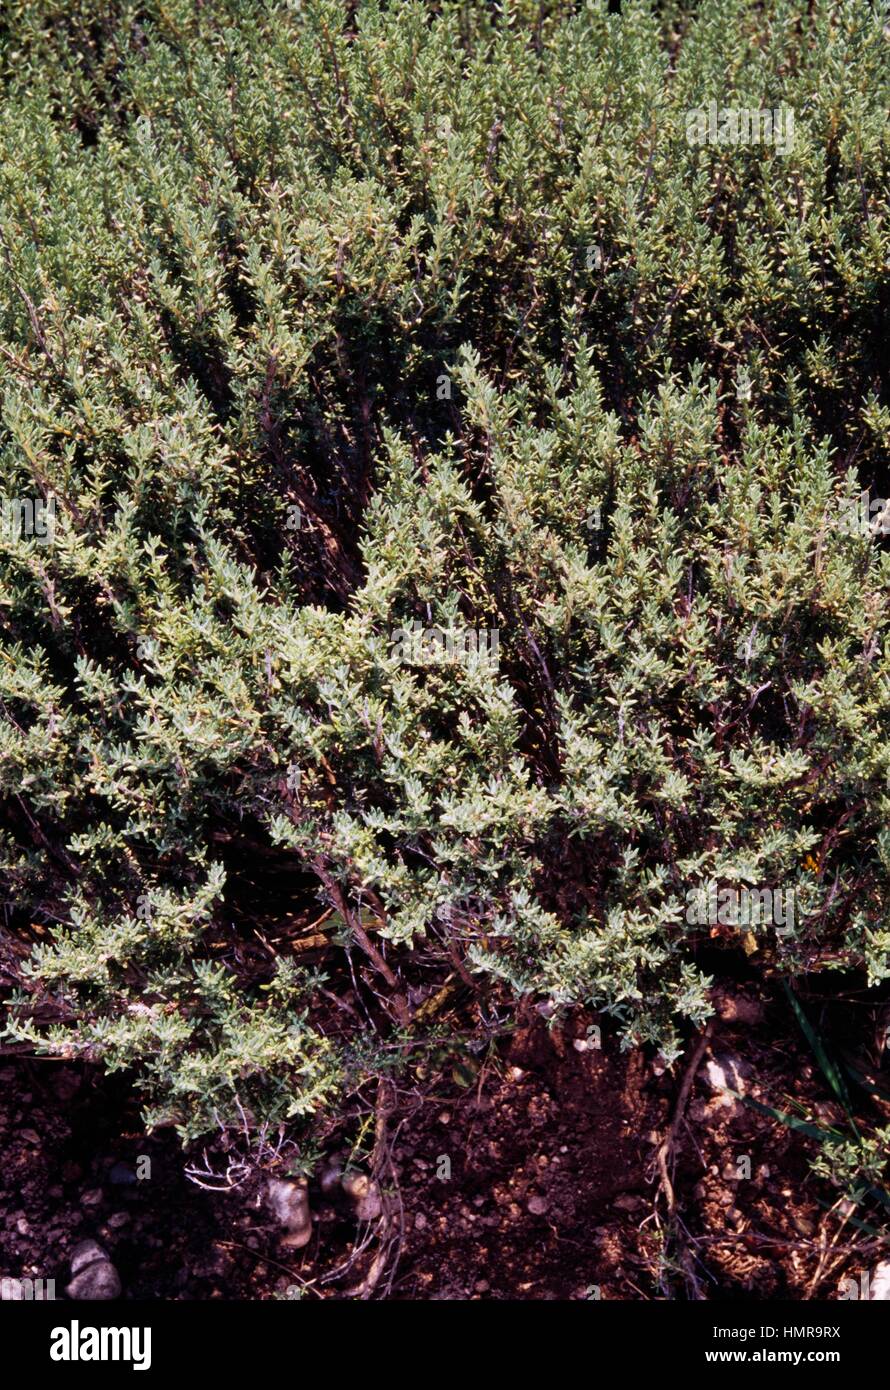 Thyme (Thymus richardii subsp nitidus), Lamiaceae. Stock Photo